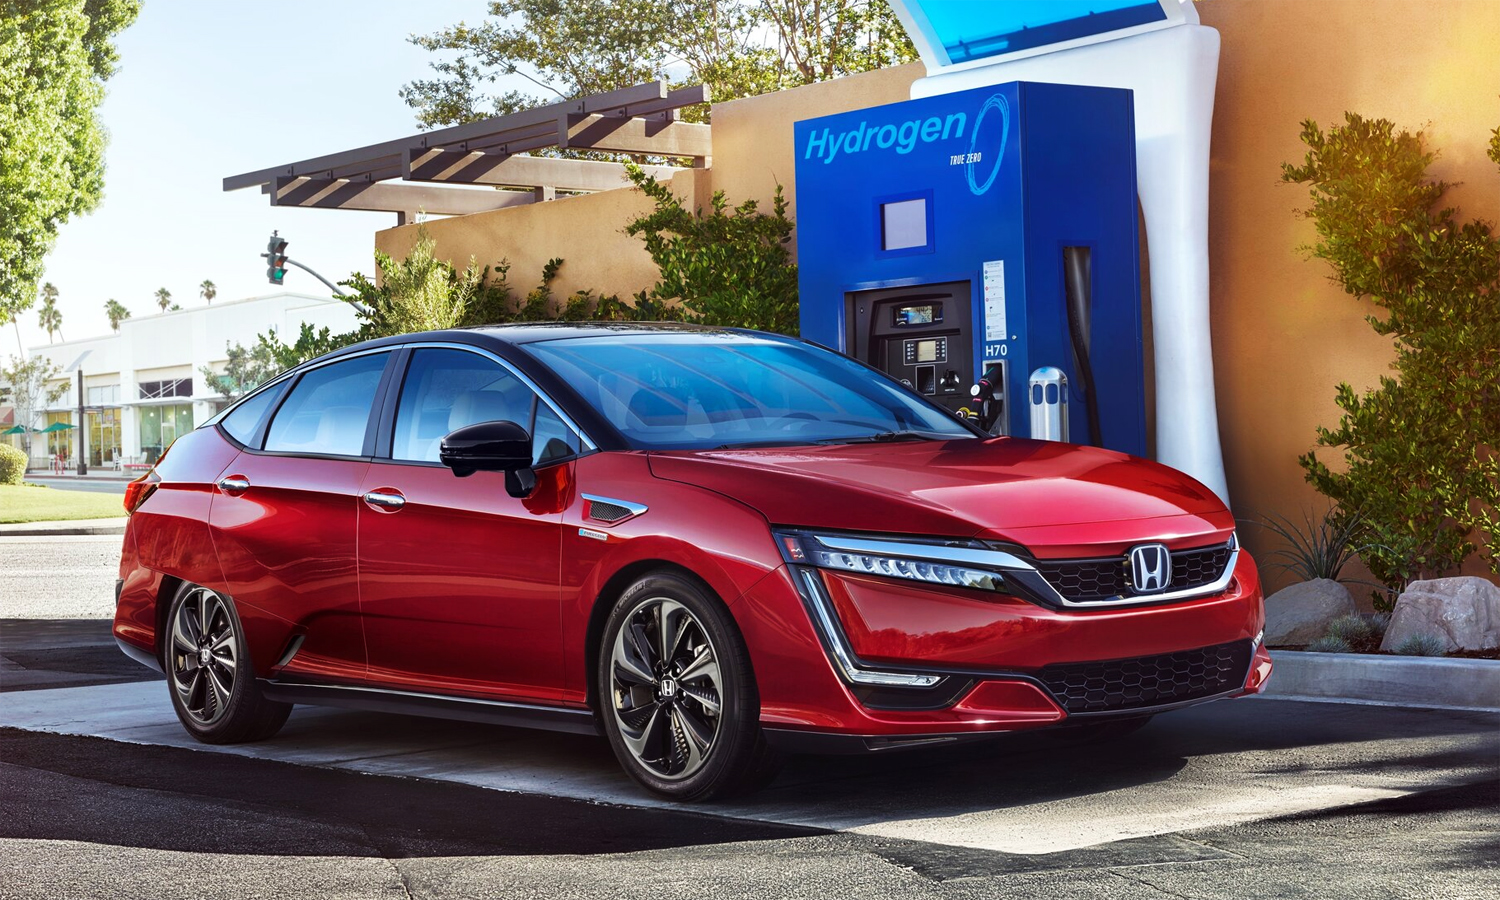 Honda Clarity Fuel Cell - ôtô chạy bằng nhiên liệu hydro được sản xuất từ 2008 đến 2021.